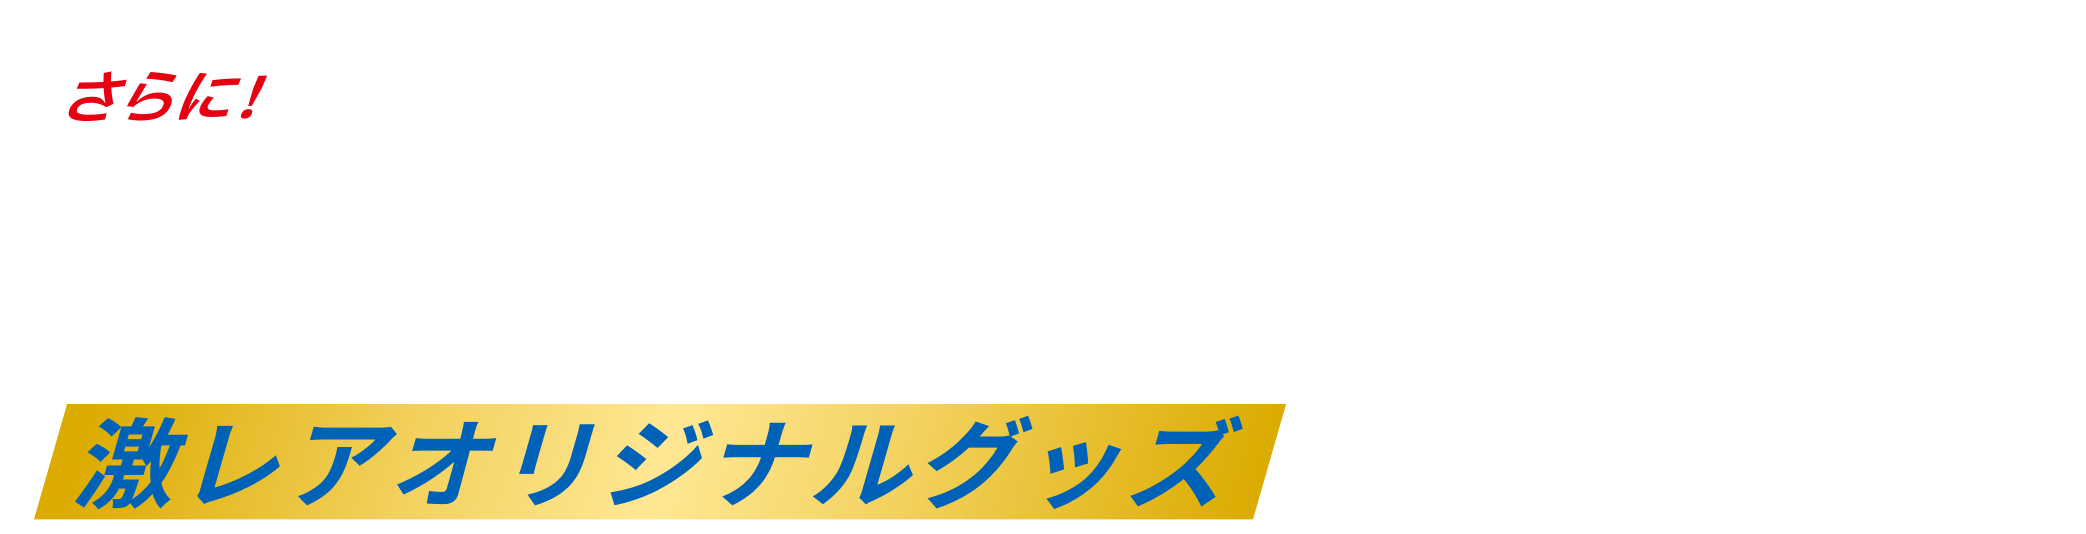 コンプリートNFT駅スタンプを獲得された方に配布される「引換券NFT」を使って激レアオリジナルグッズをゲットしよう！